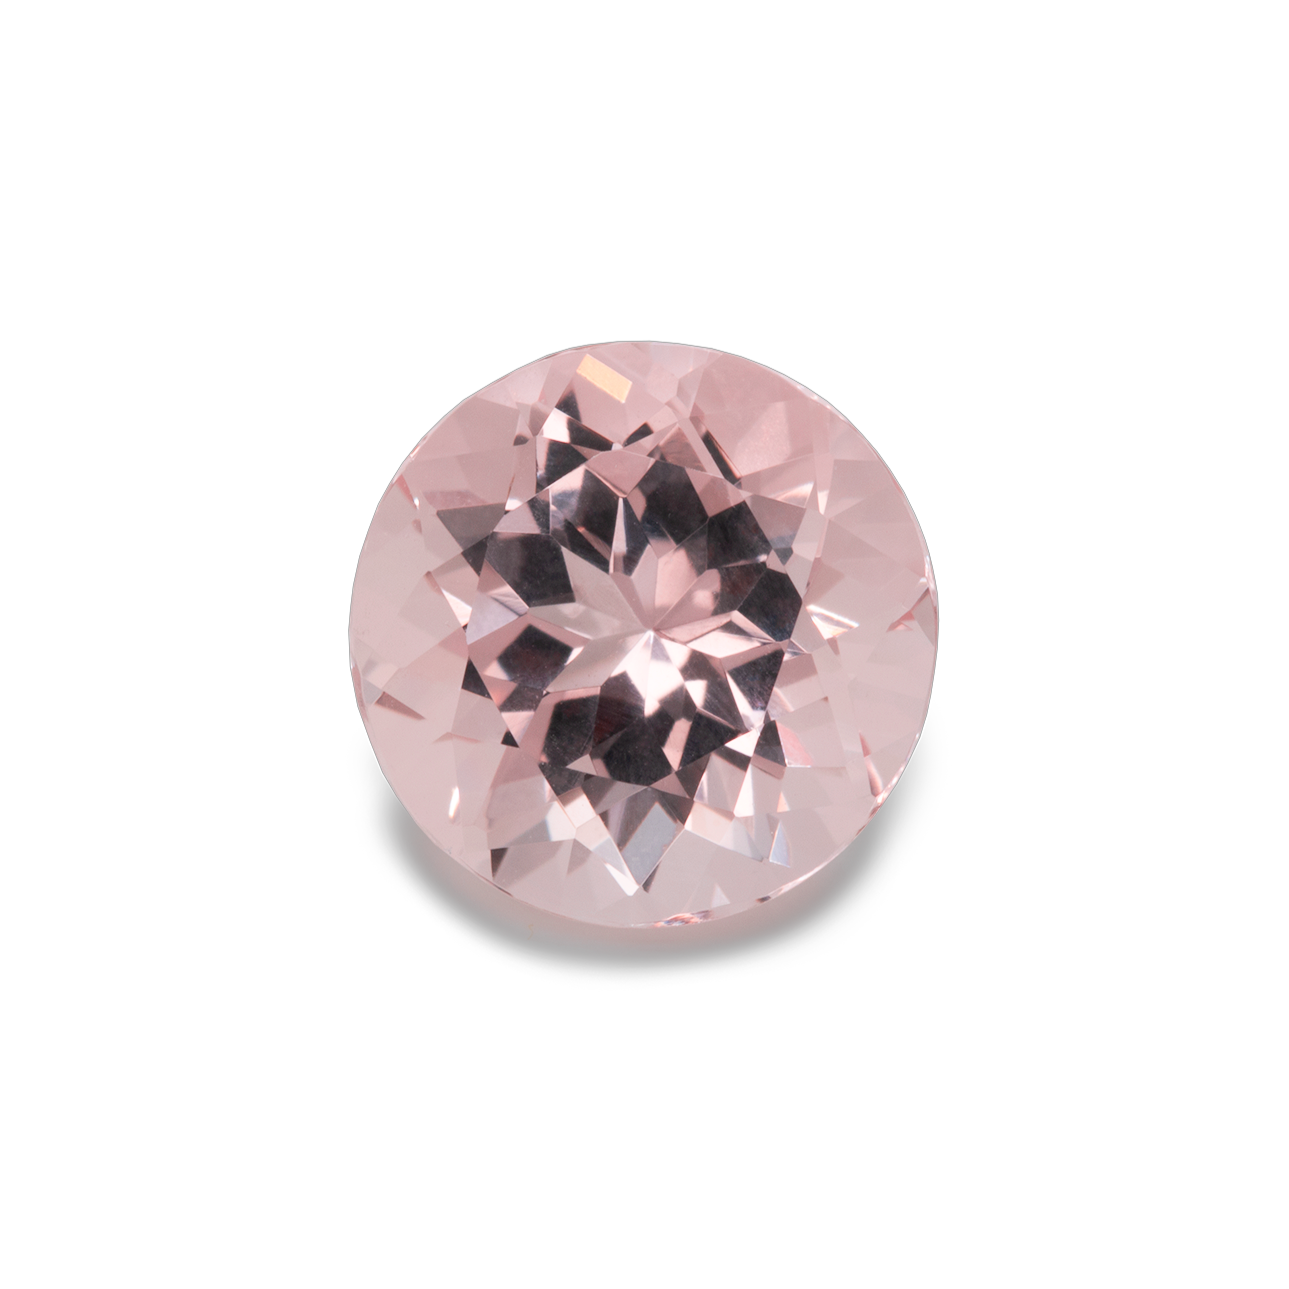 Morganite - pink, round, 10x10 mm, 3.50 cts, No. MO14001